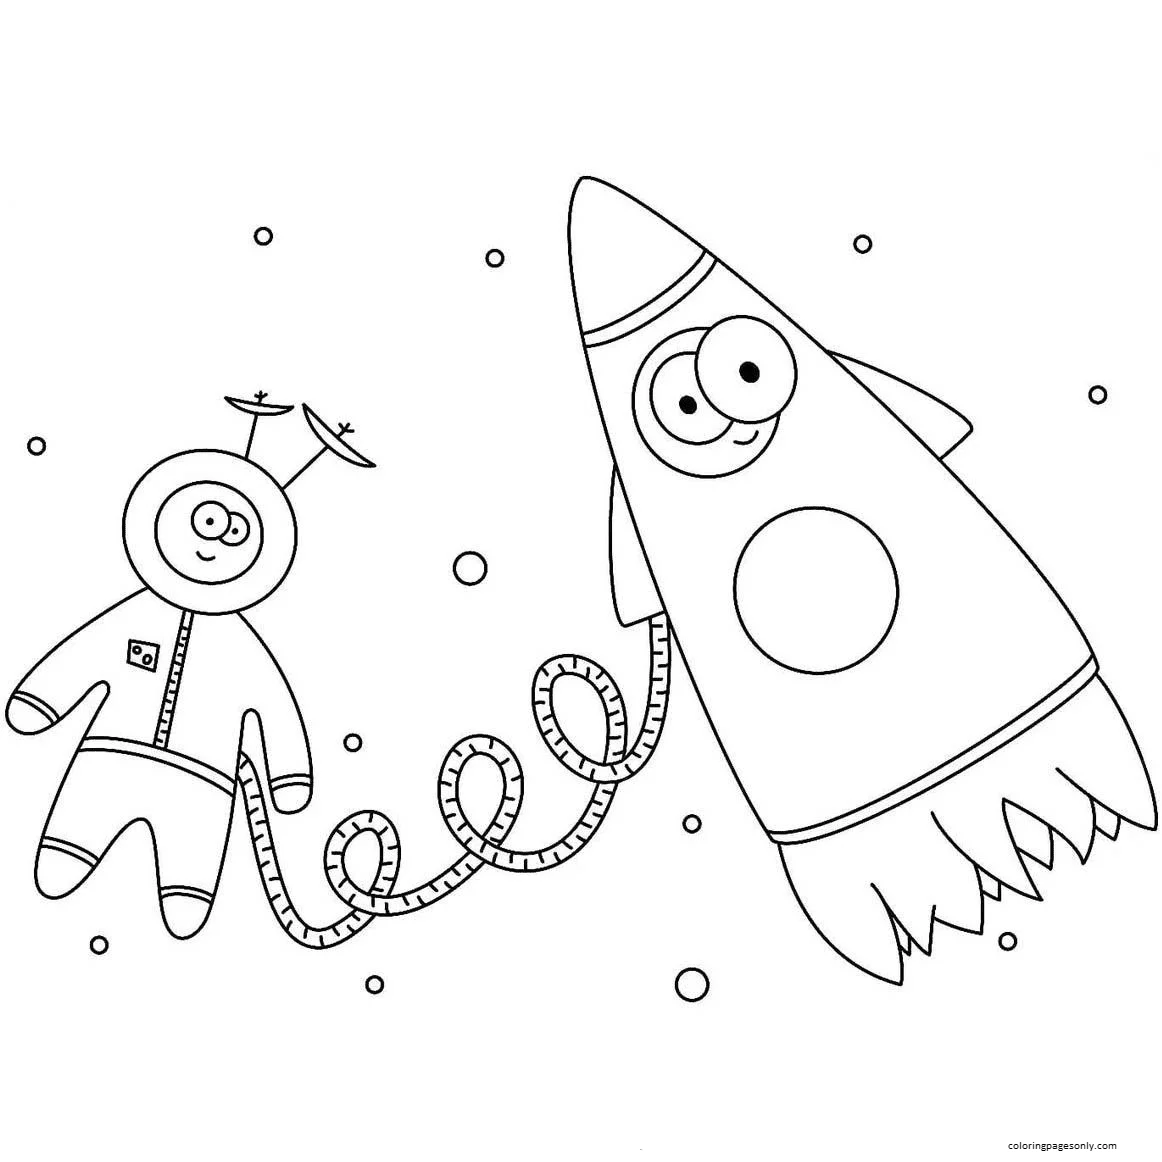 Cartoon astronaut met raket van Rocket